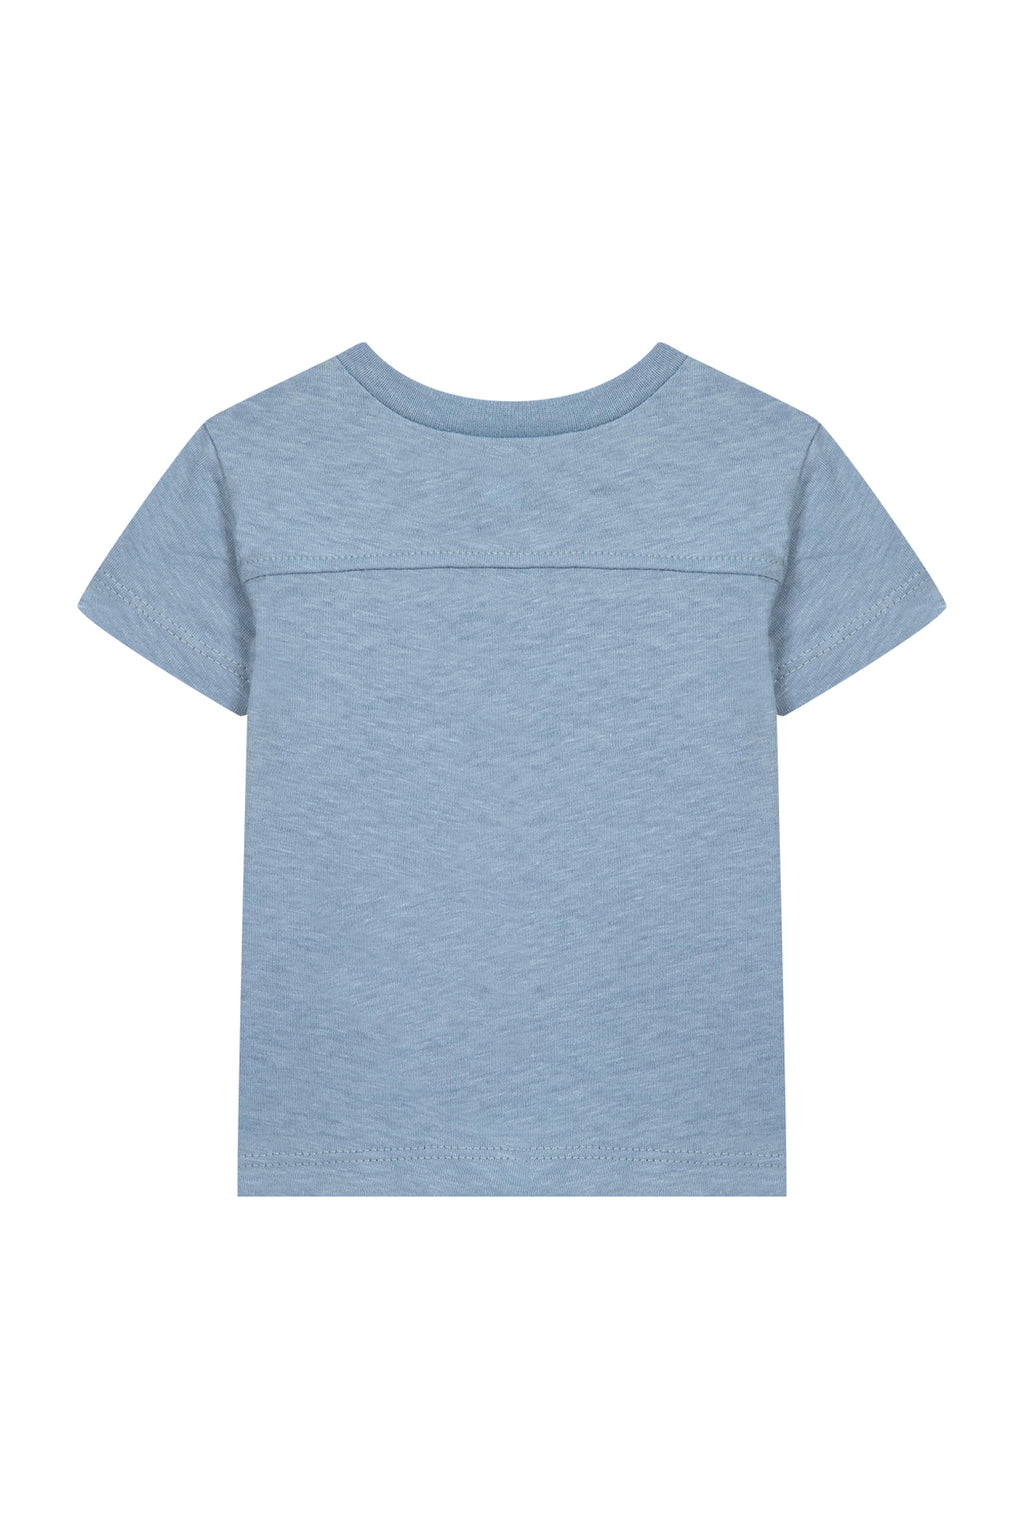 Camiseta - Azul cobalto Ilustración camioneta